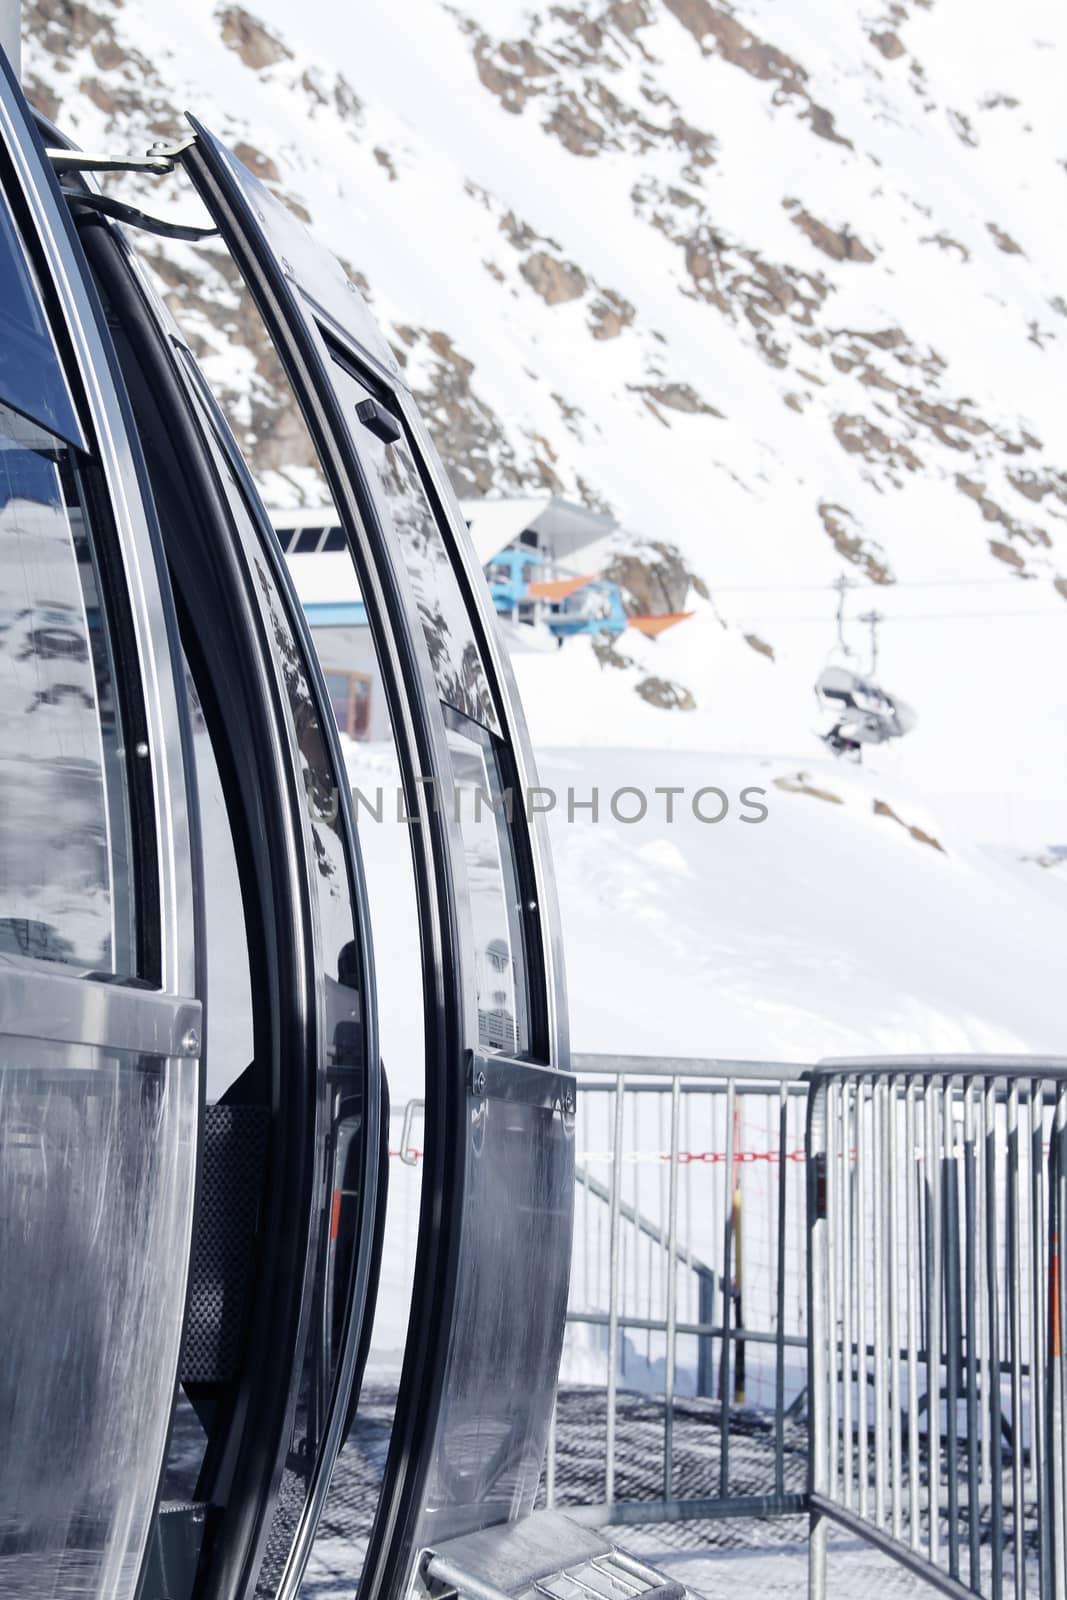 Ski lift in mountains by destillat